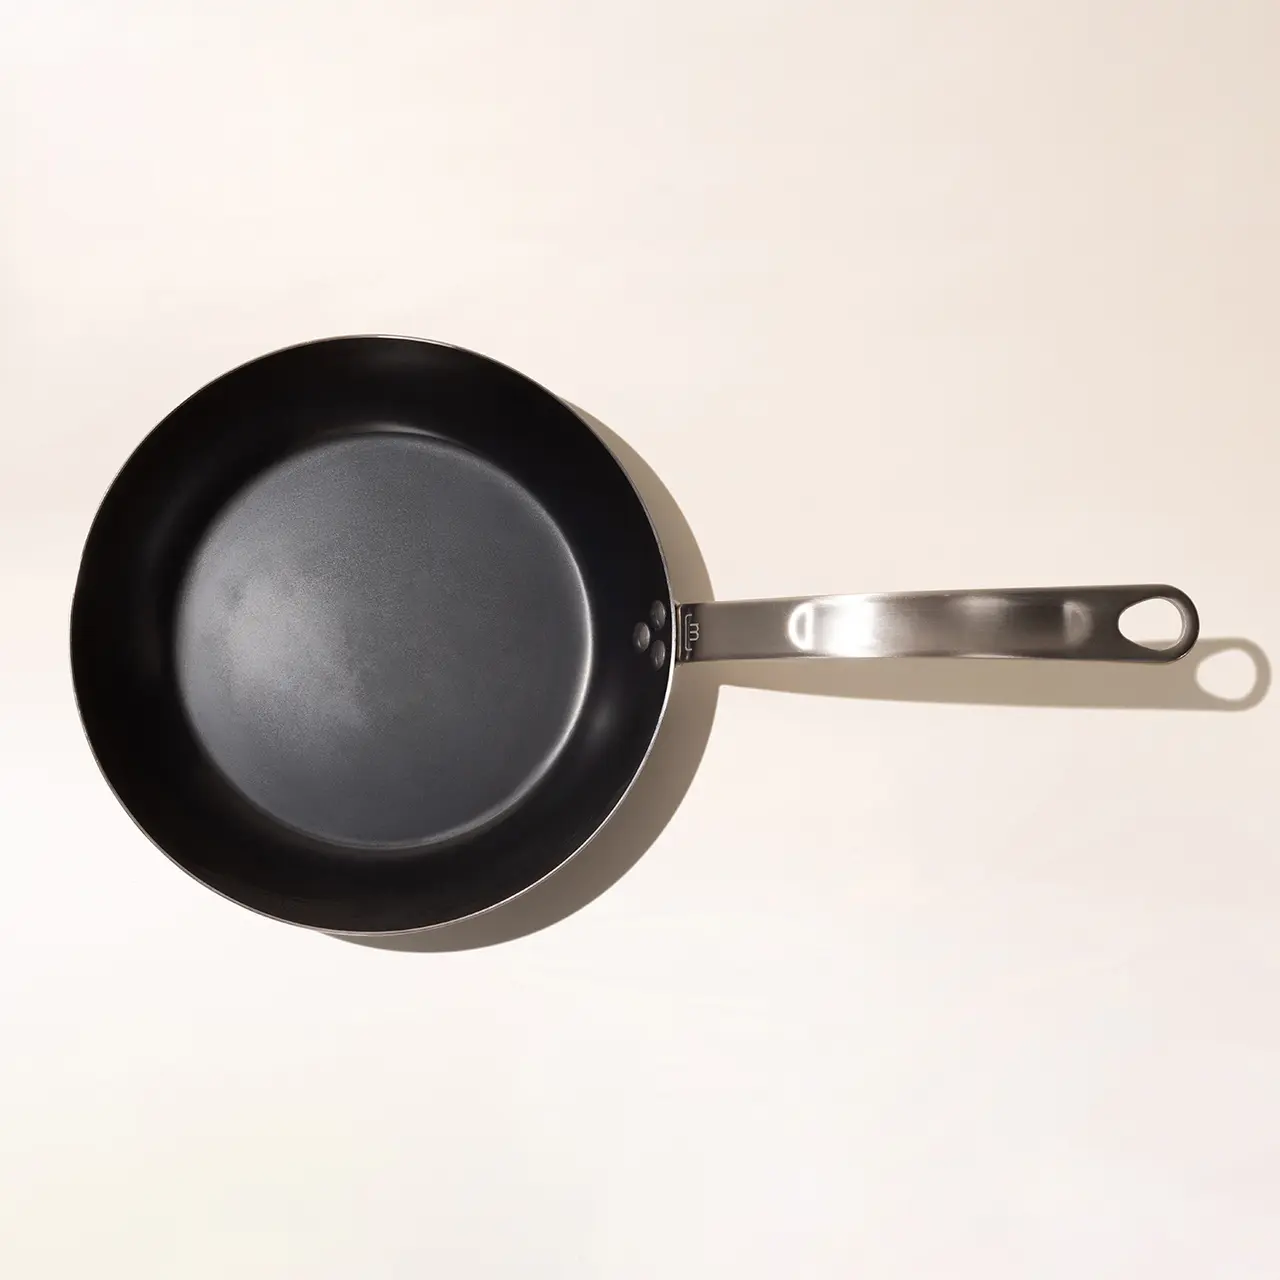 carbon steel frying pan 10 inch top